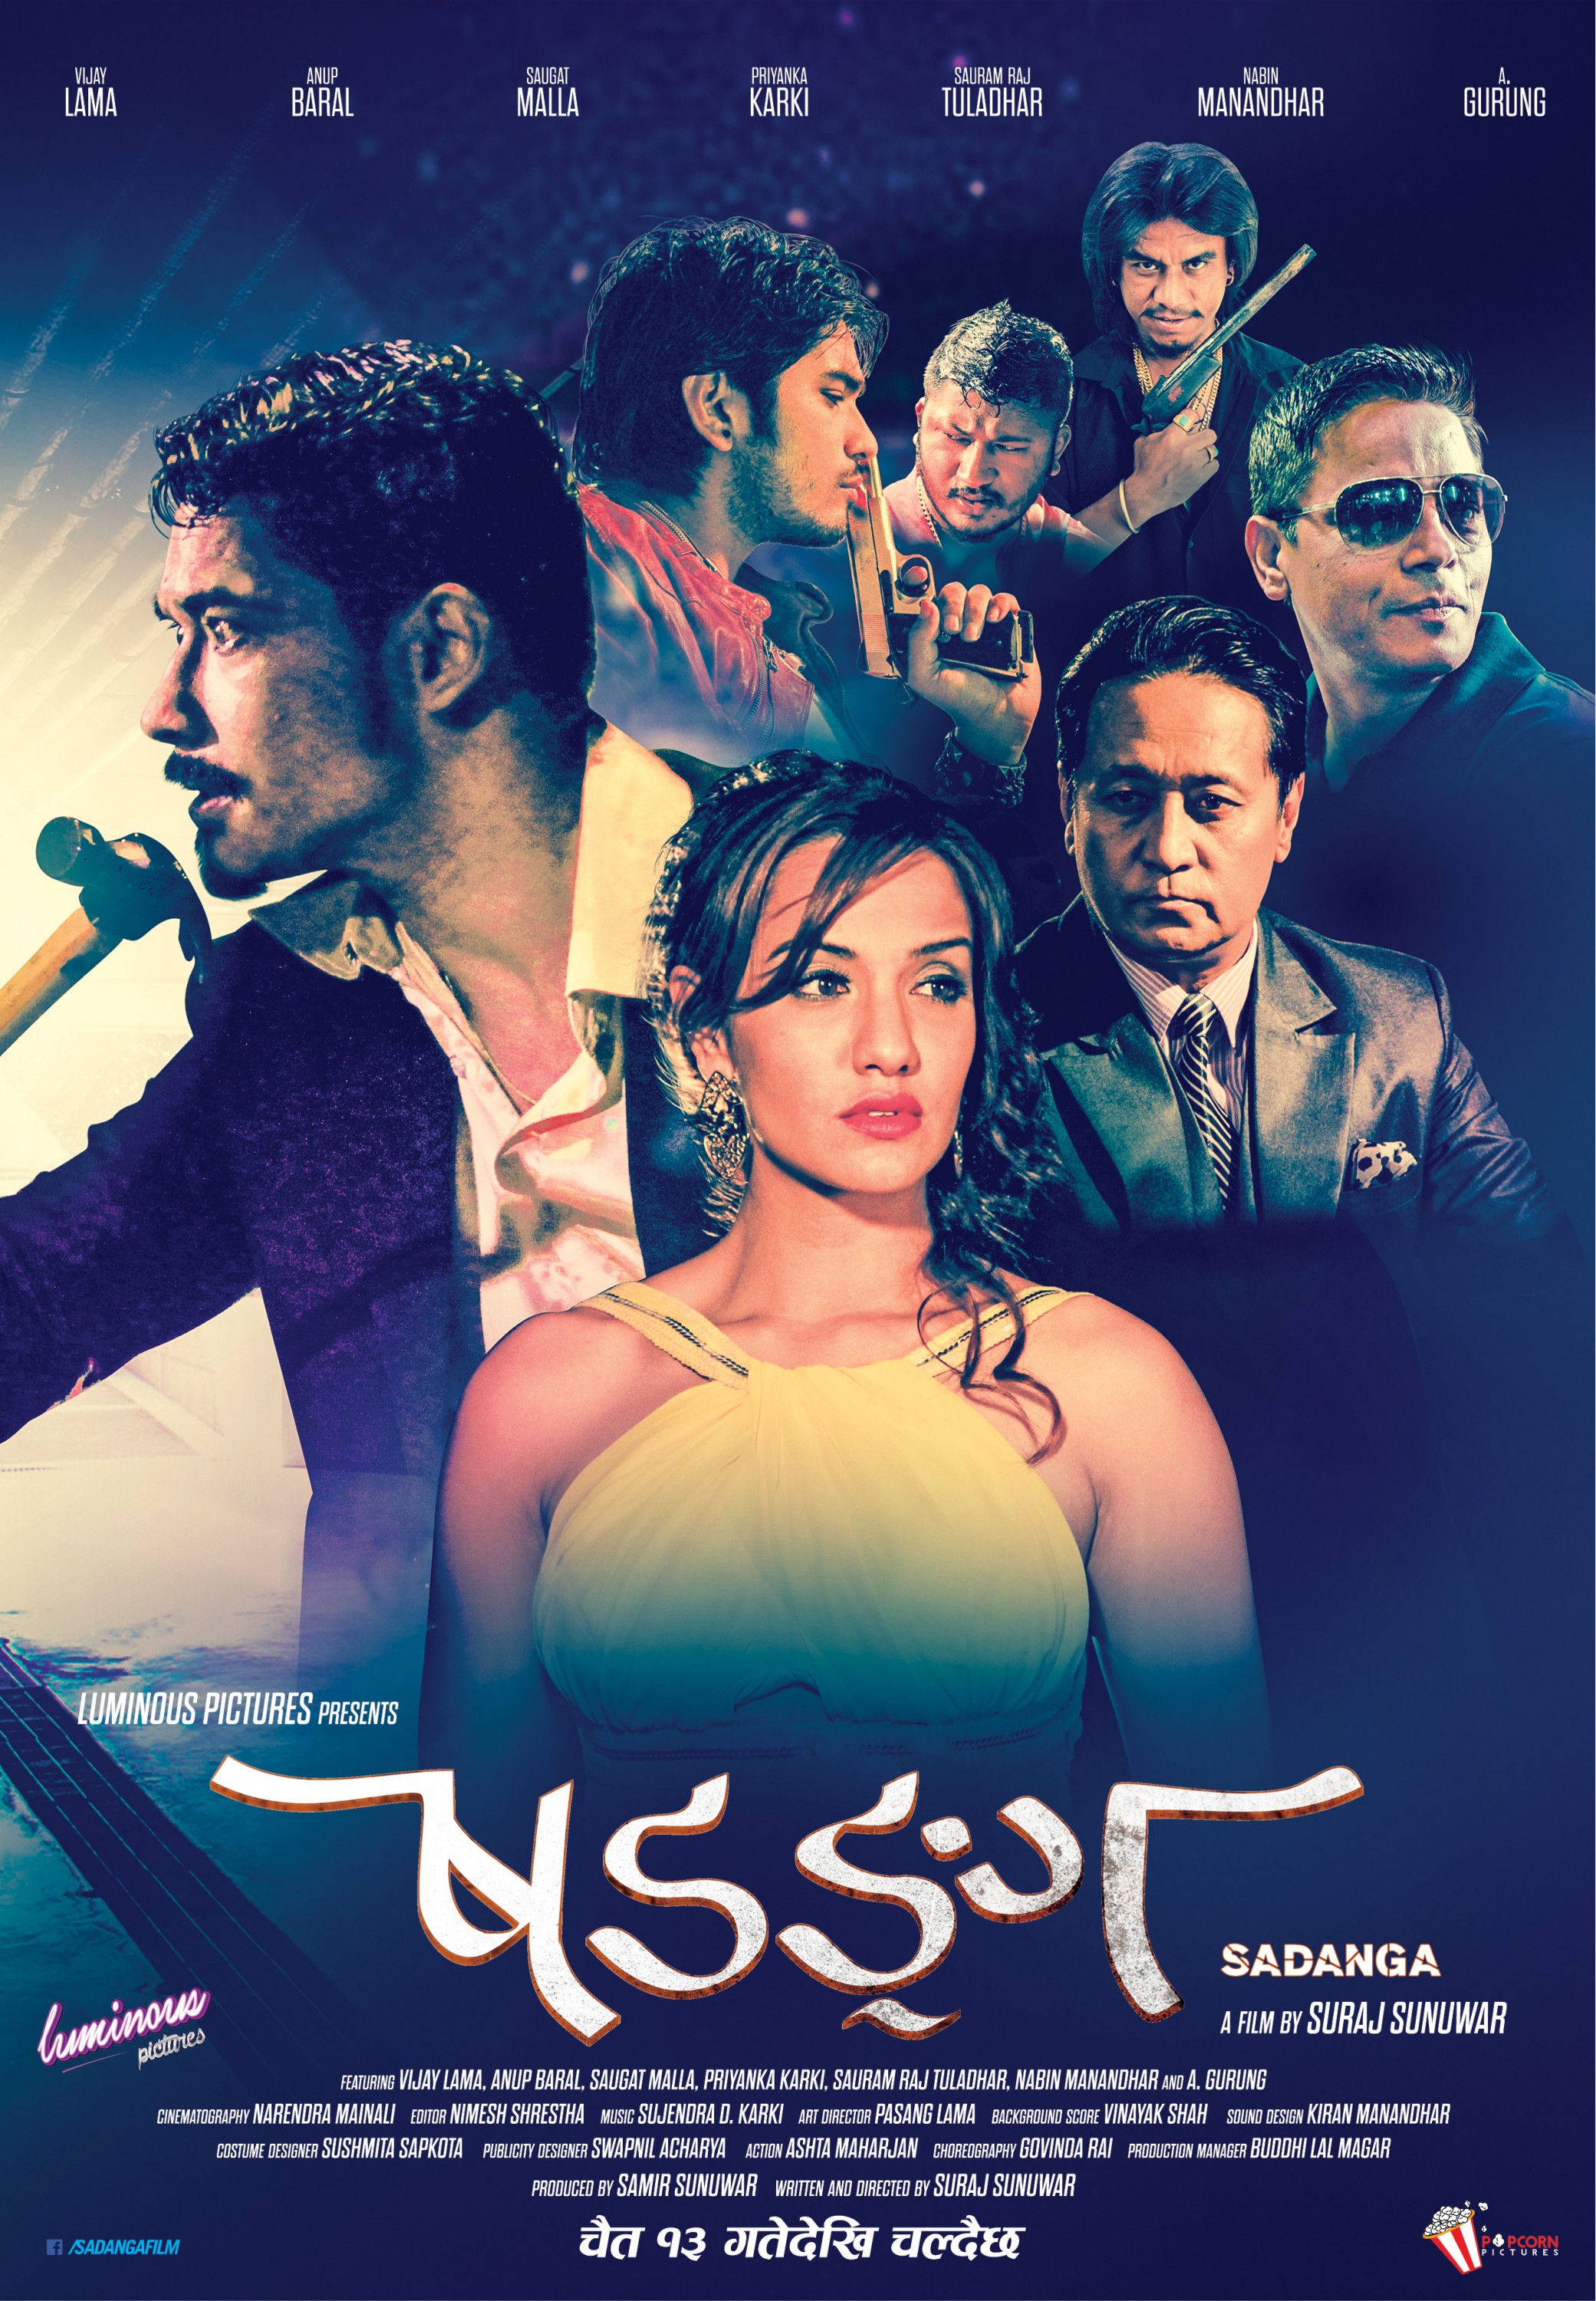 Mega Sized Movie Poster Image for Sadanga (#3 of 6)